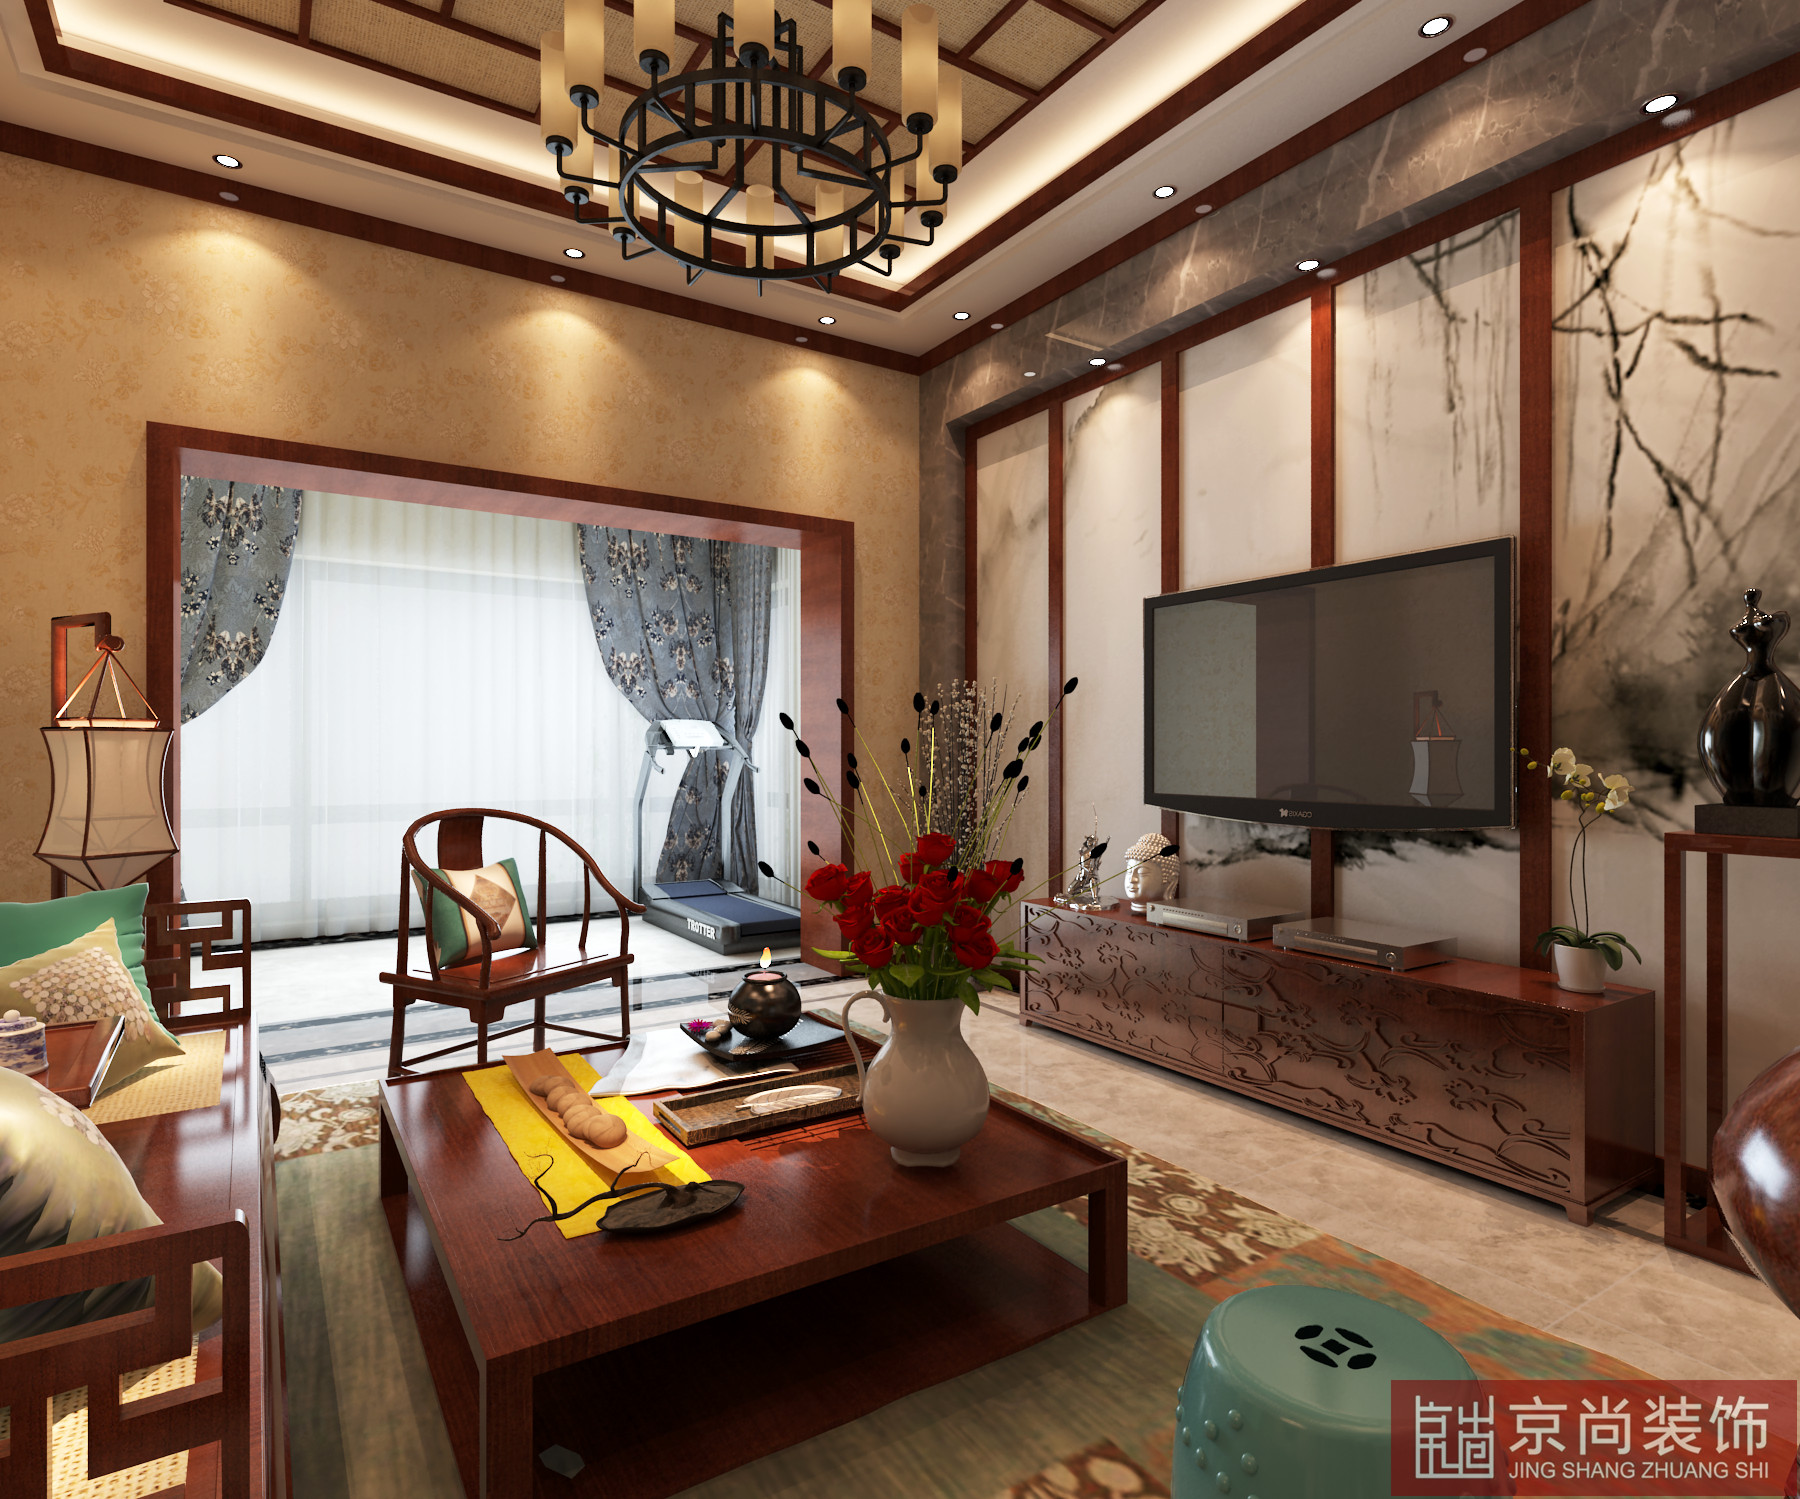 中式 古典 收纳 独特 客厅图片来自天津京尚装饰在京尚装饰-美阳-中式四居的分享